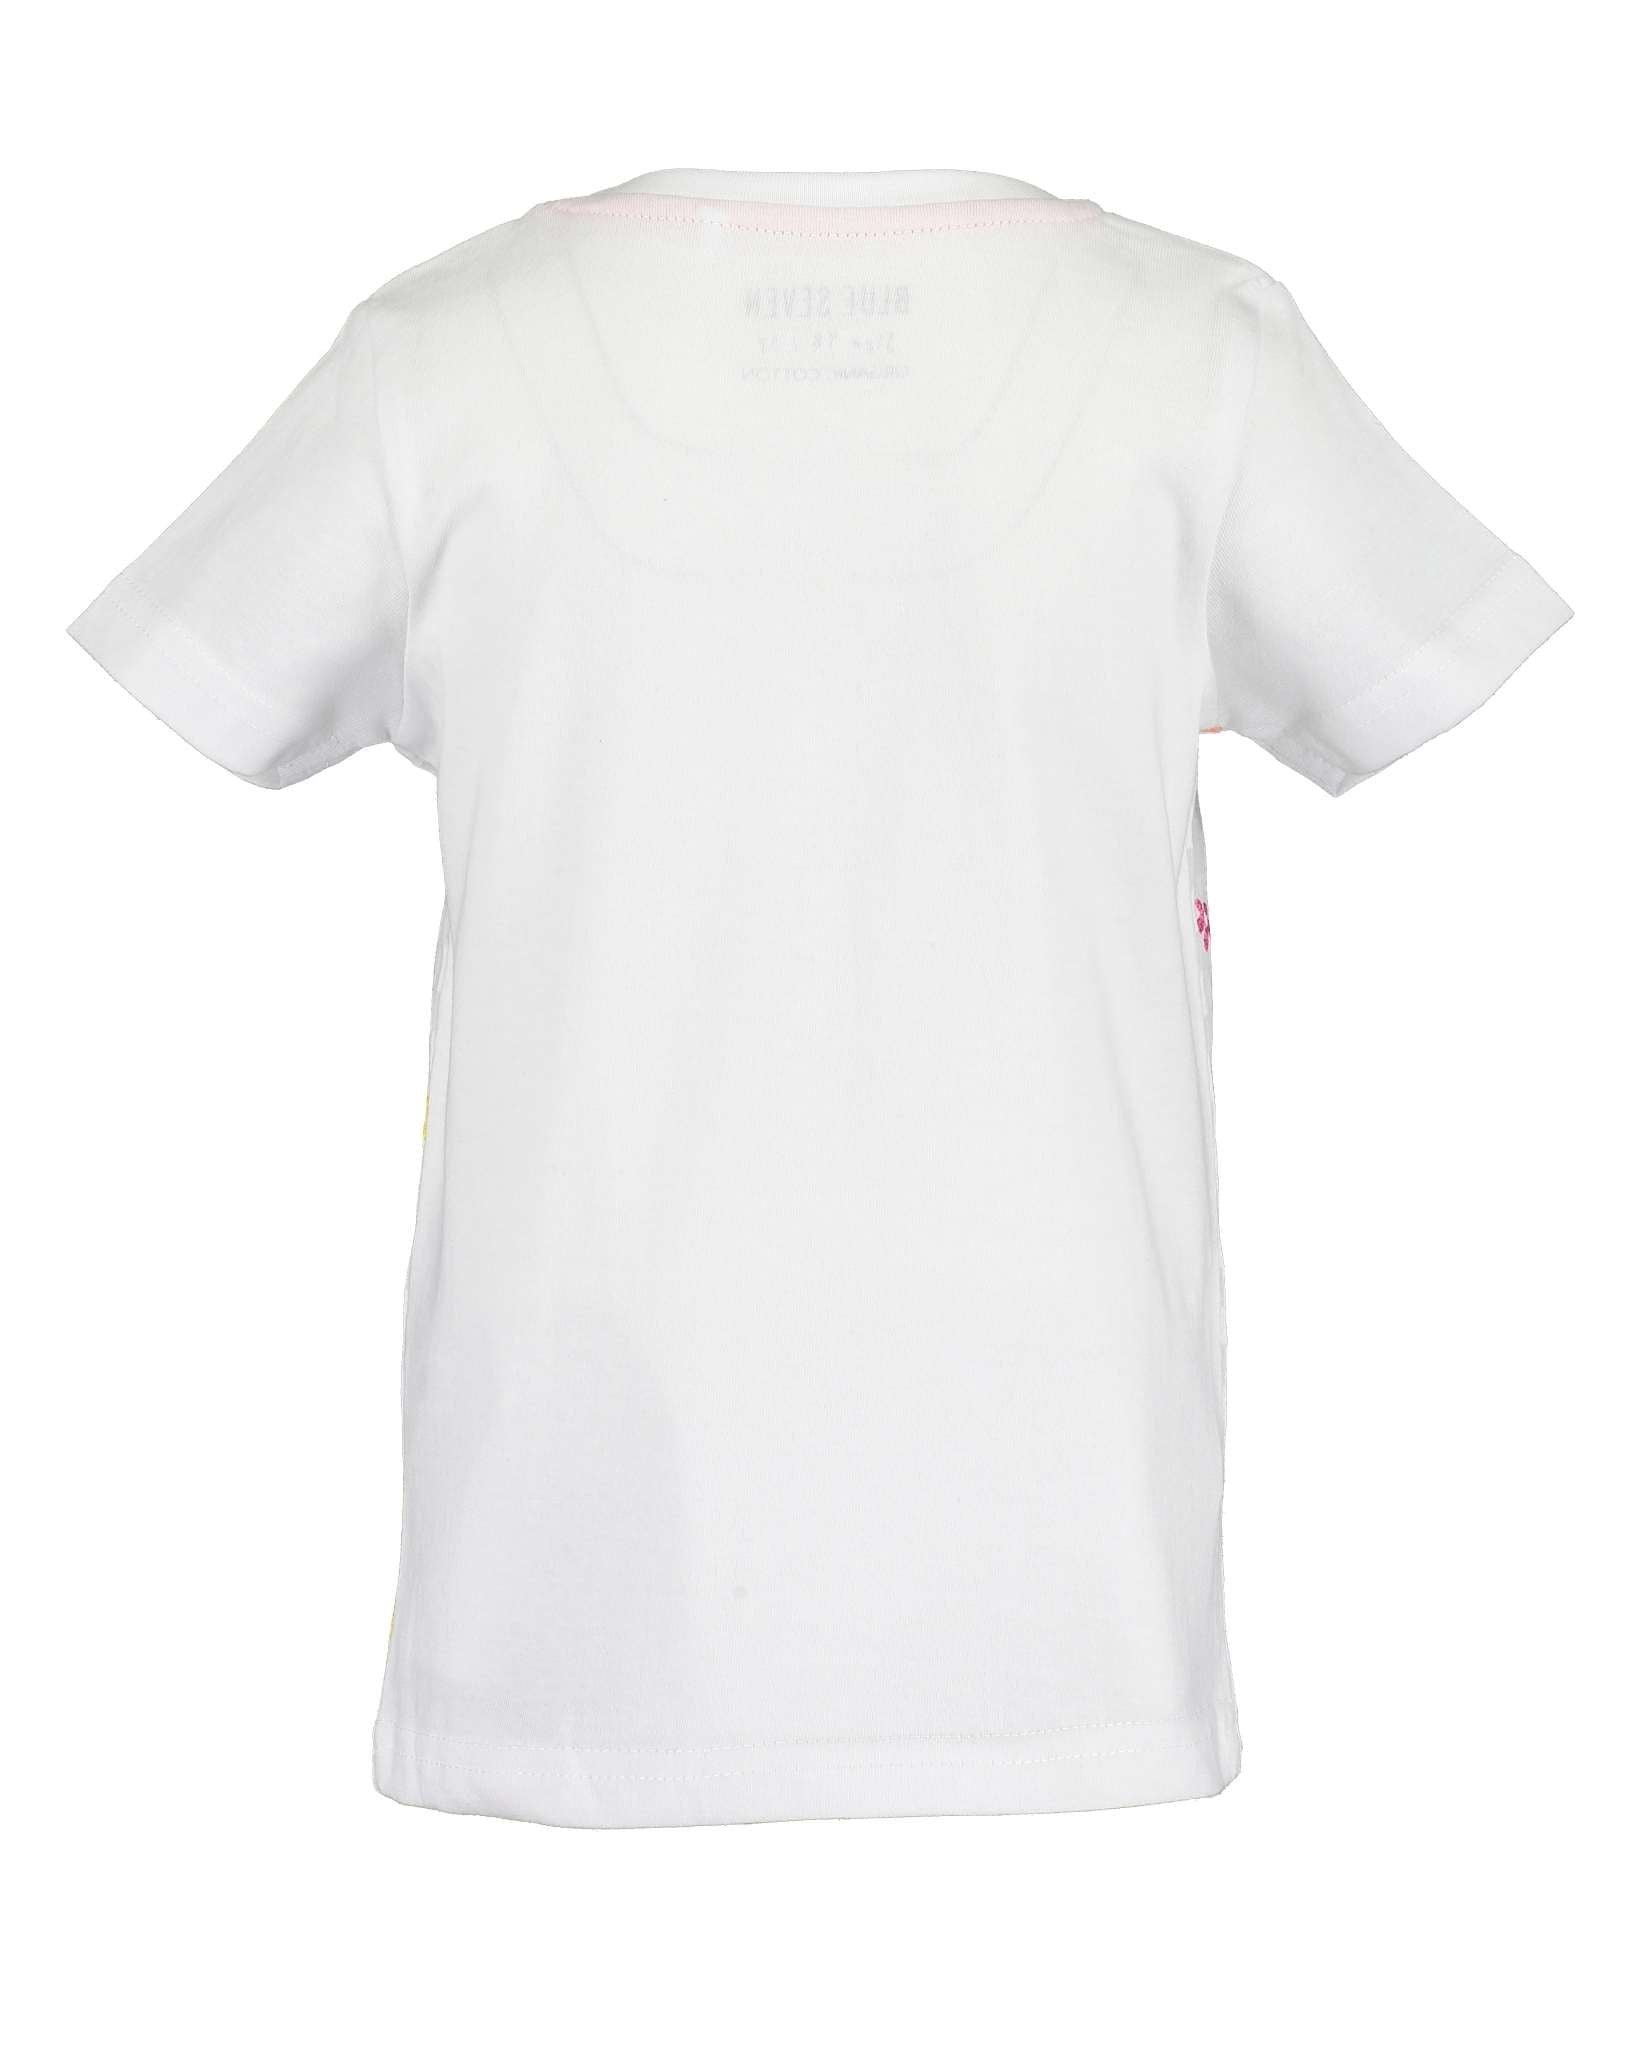 Girls White & Grey Striped Koala T Shirt - Nana B Baby & Childrenswear Boutique